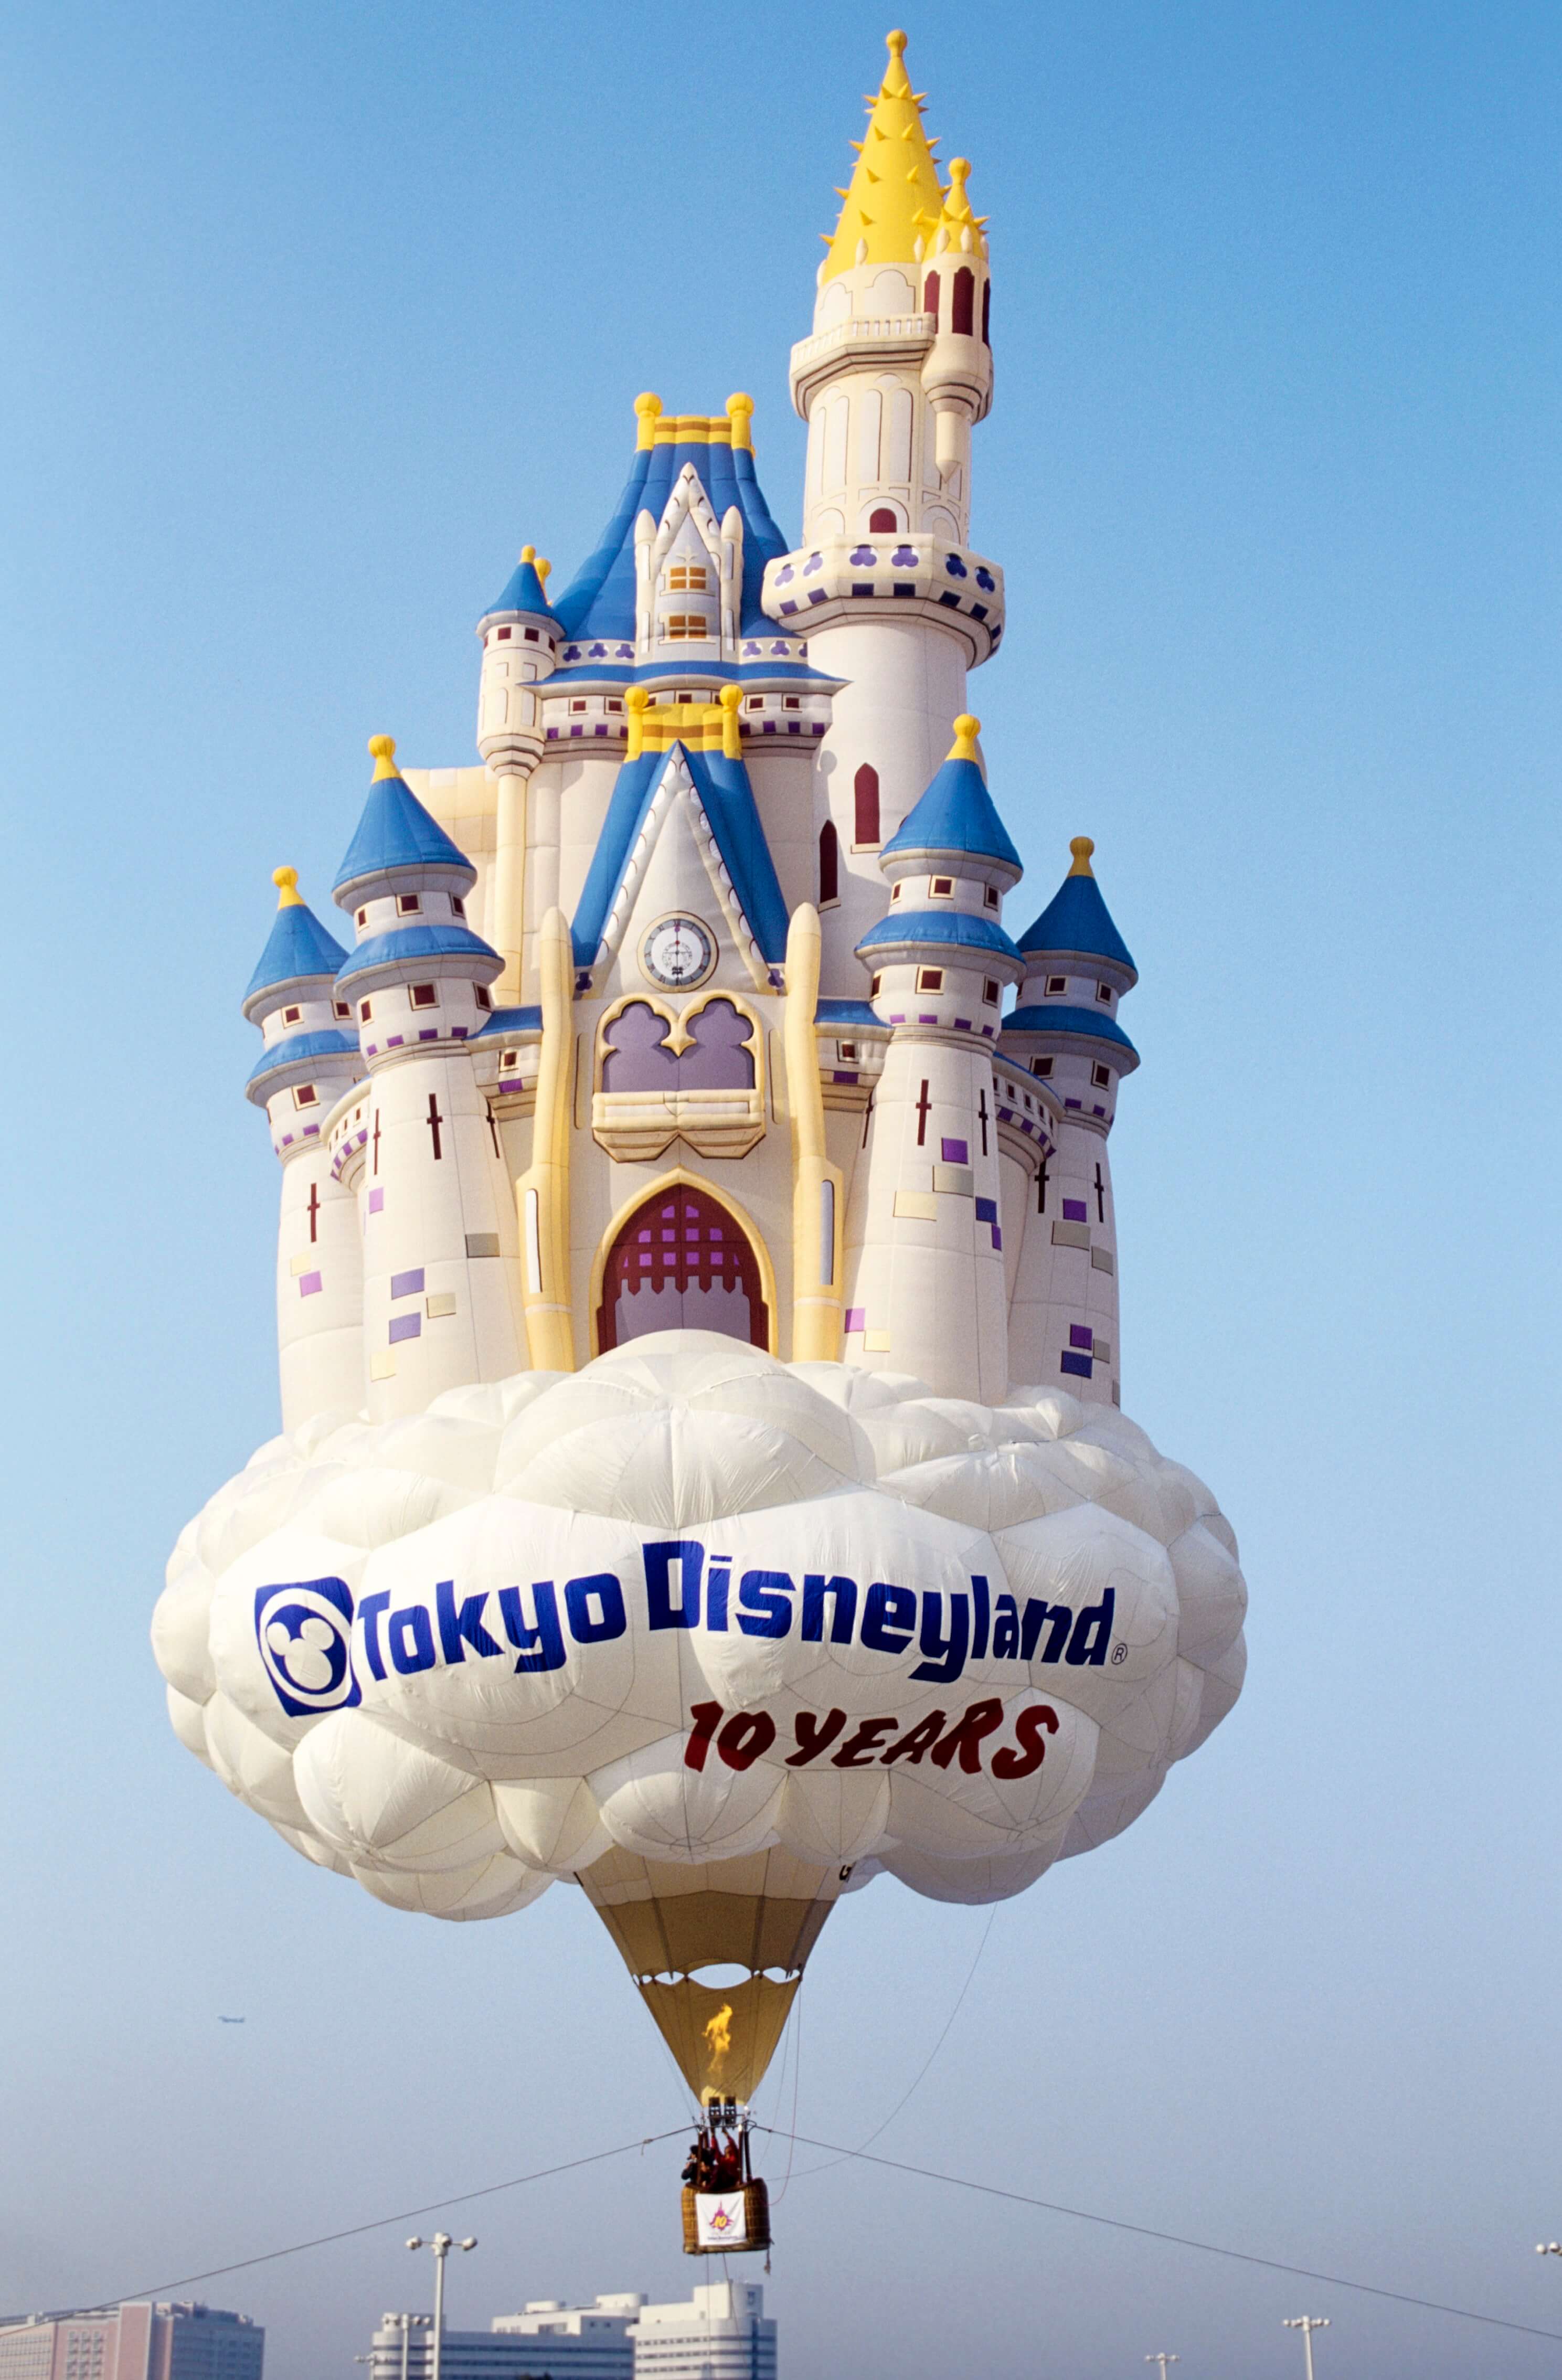 シンデレラ城形の熱気球 cinderella castle balloon 東京ディズニーランド tokyo disney land 平成30年間 heisei 30th06